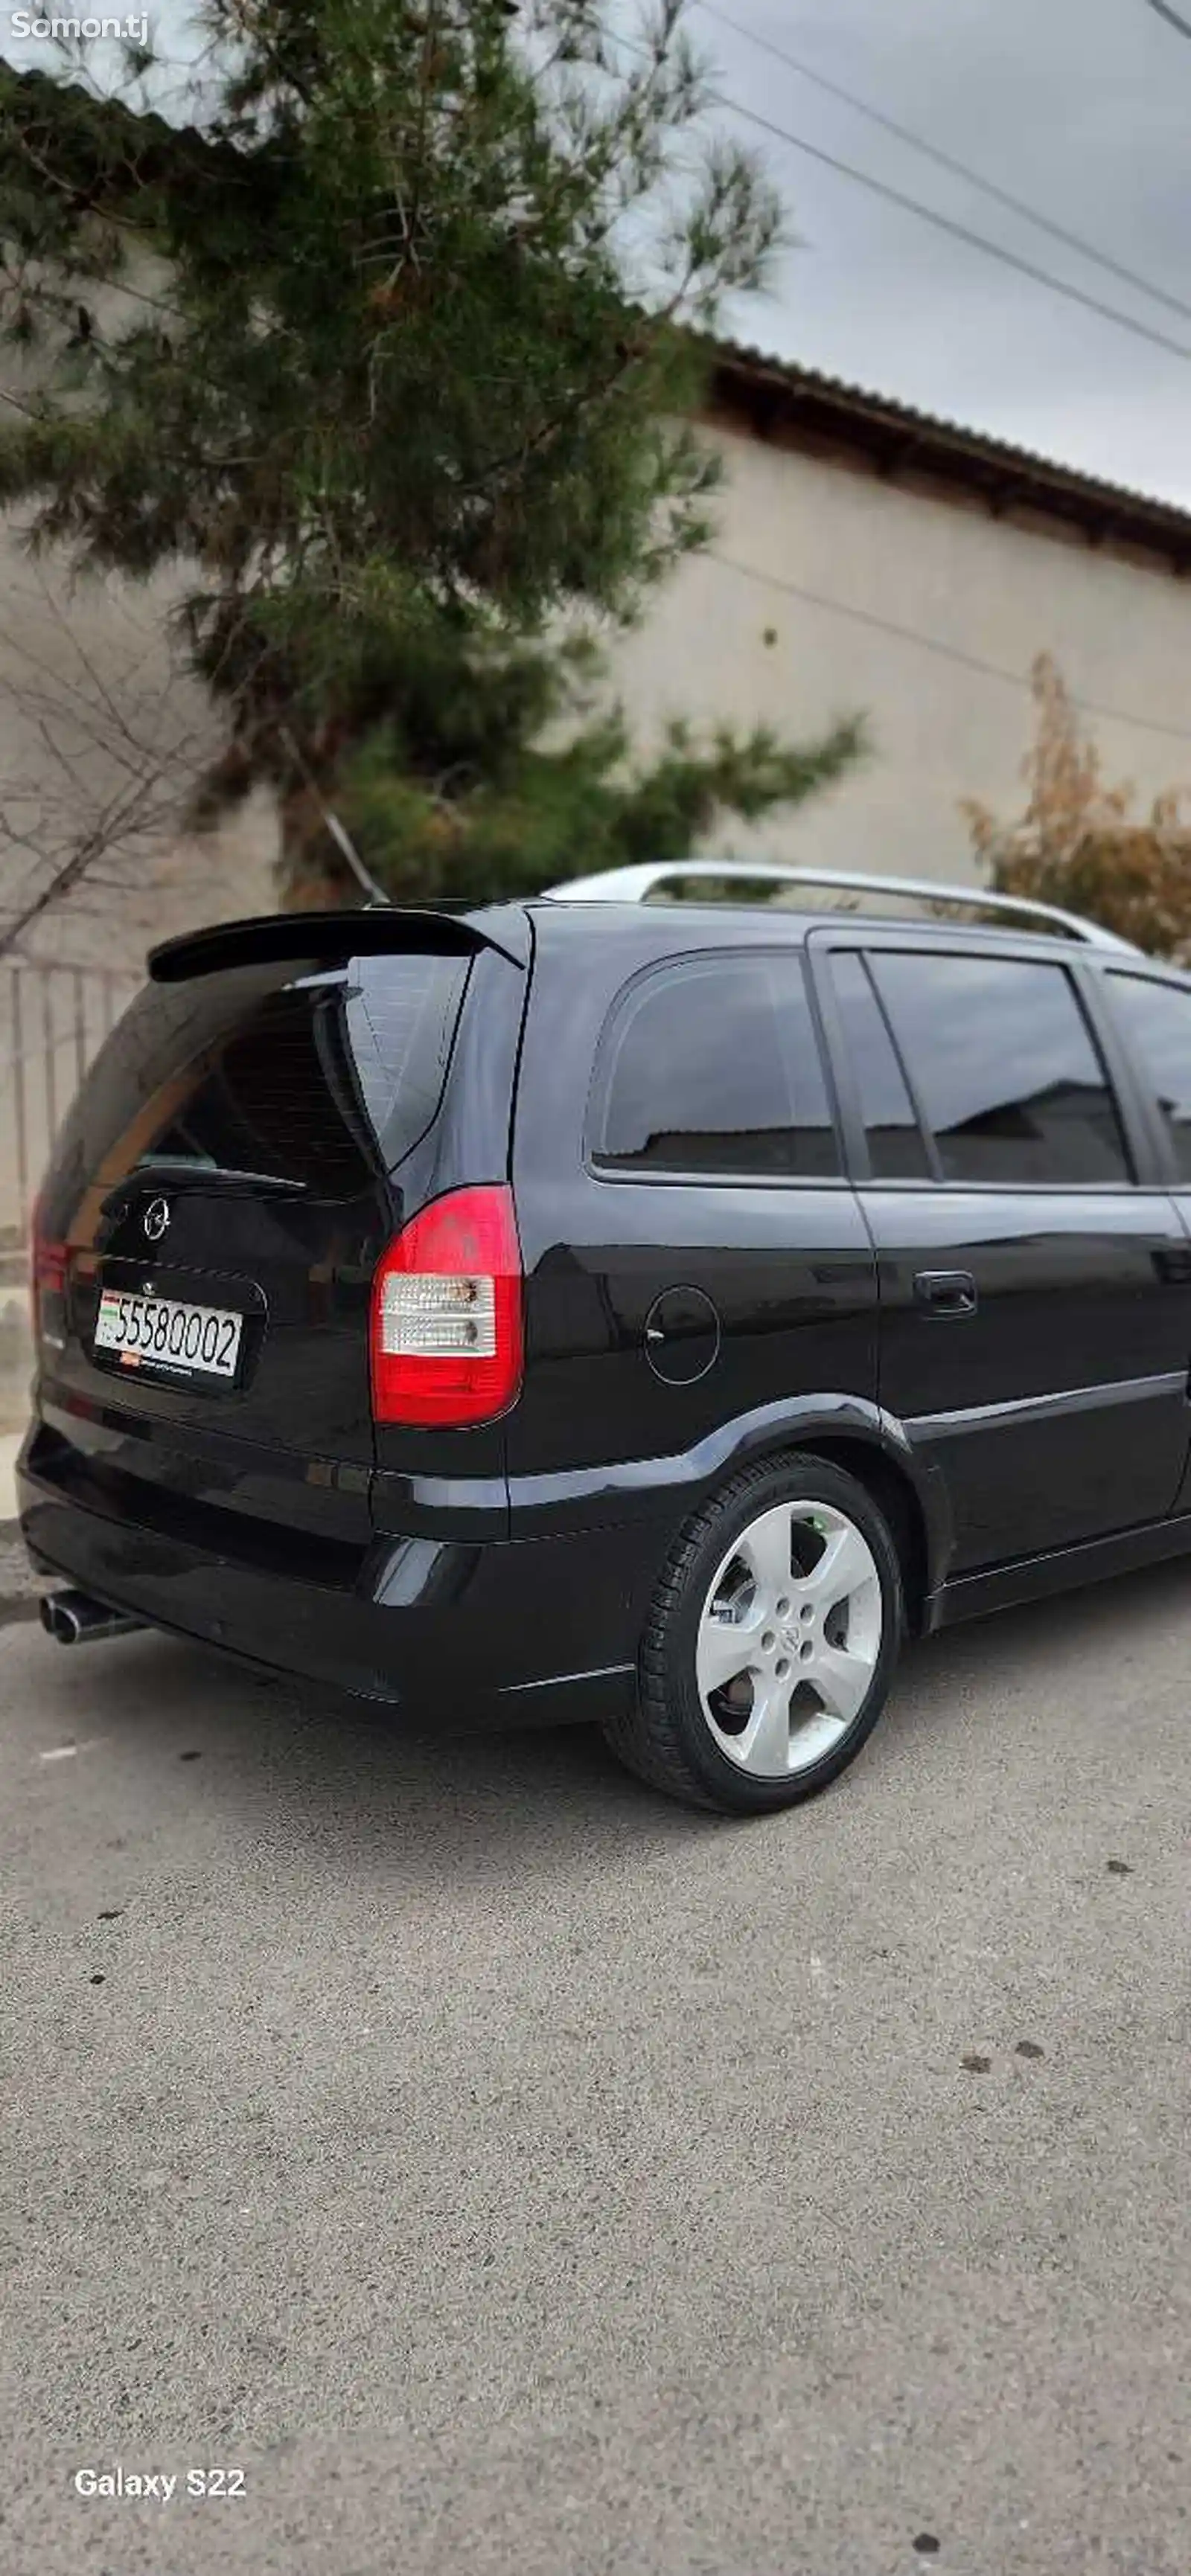 Opel Zafira, 2005-6